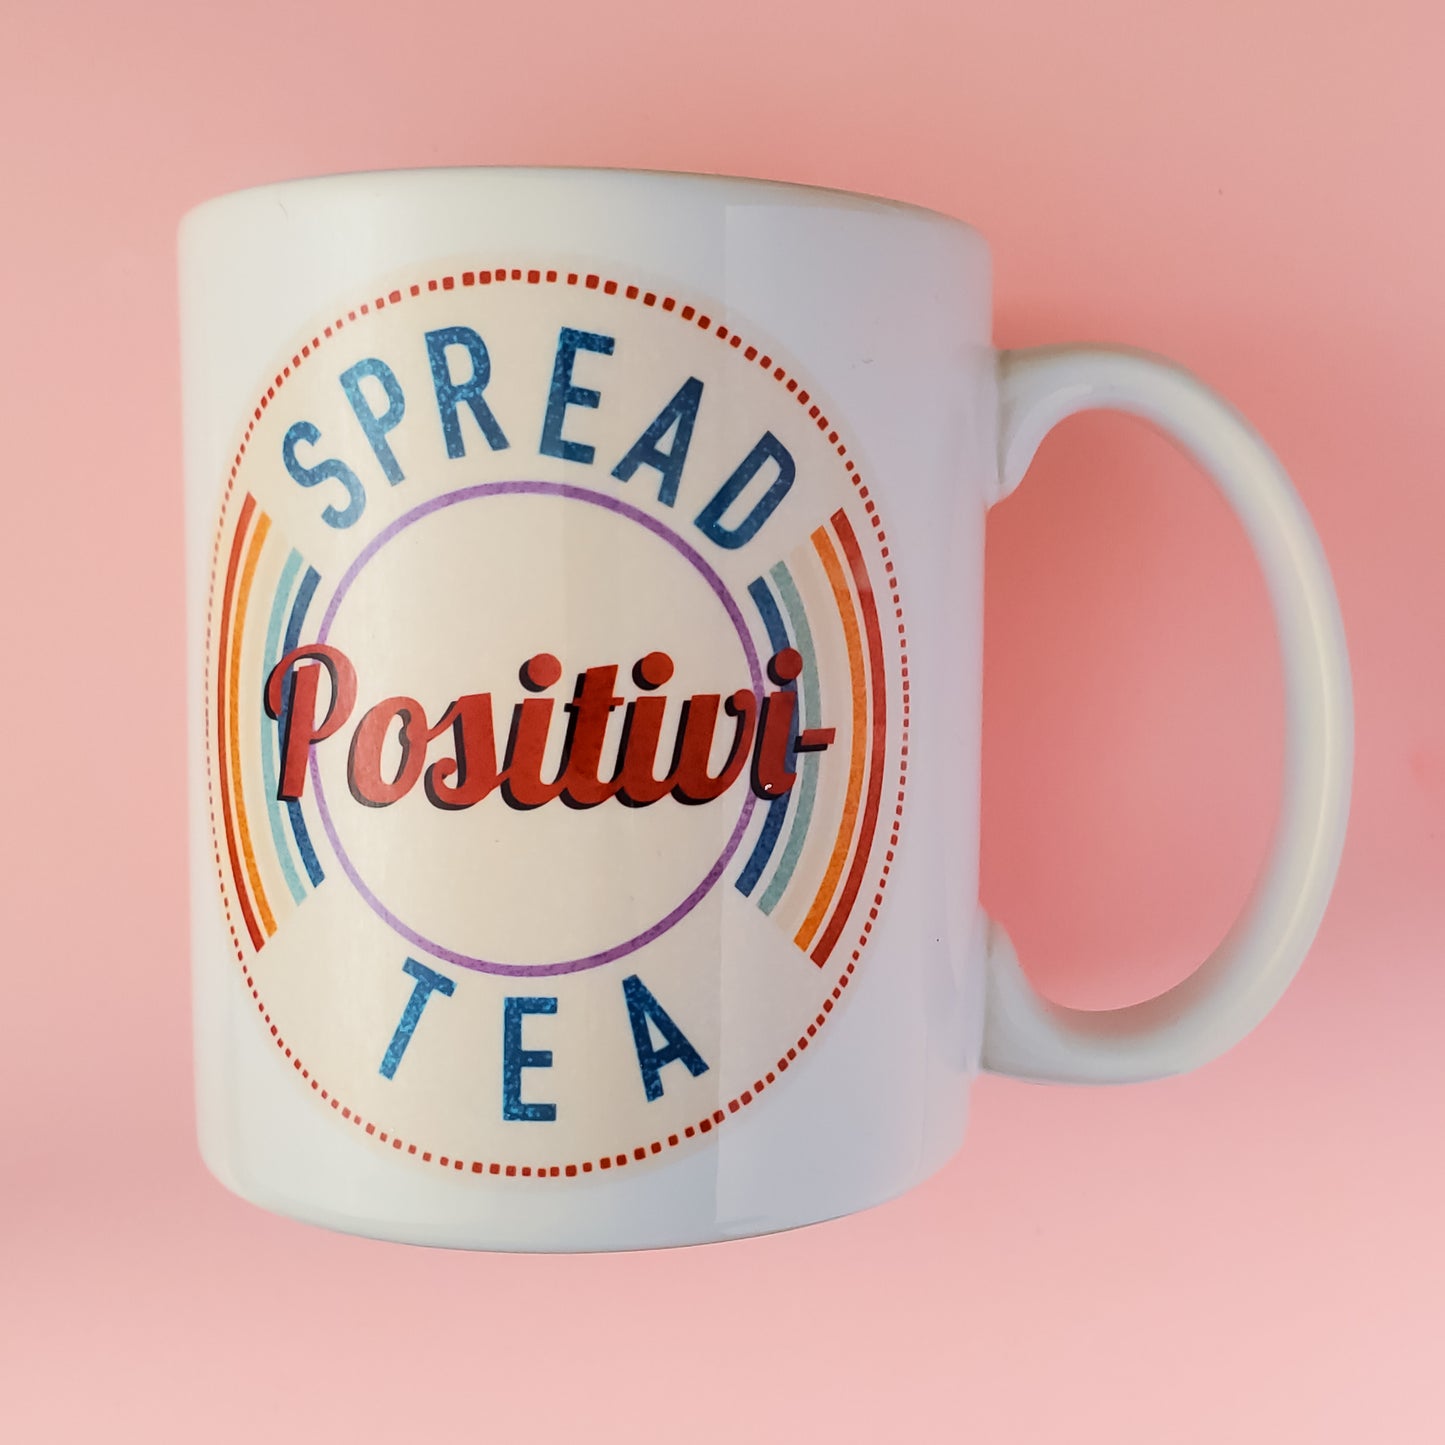 Positivi-Tea Mug